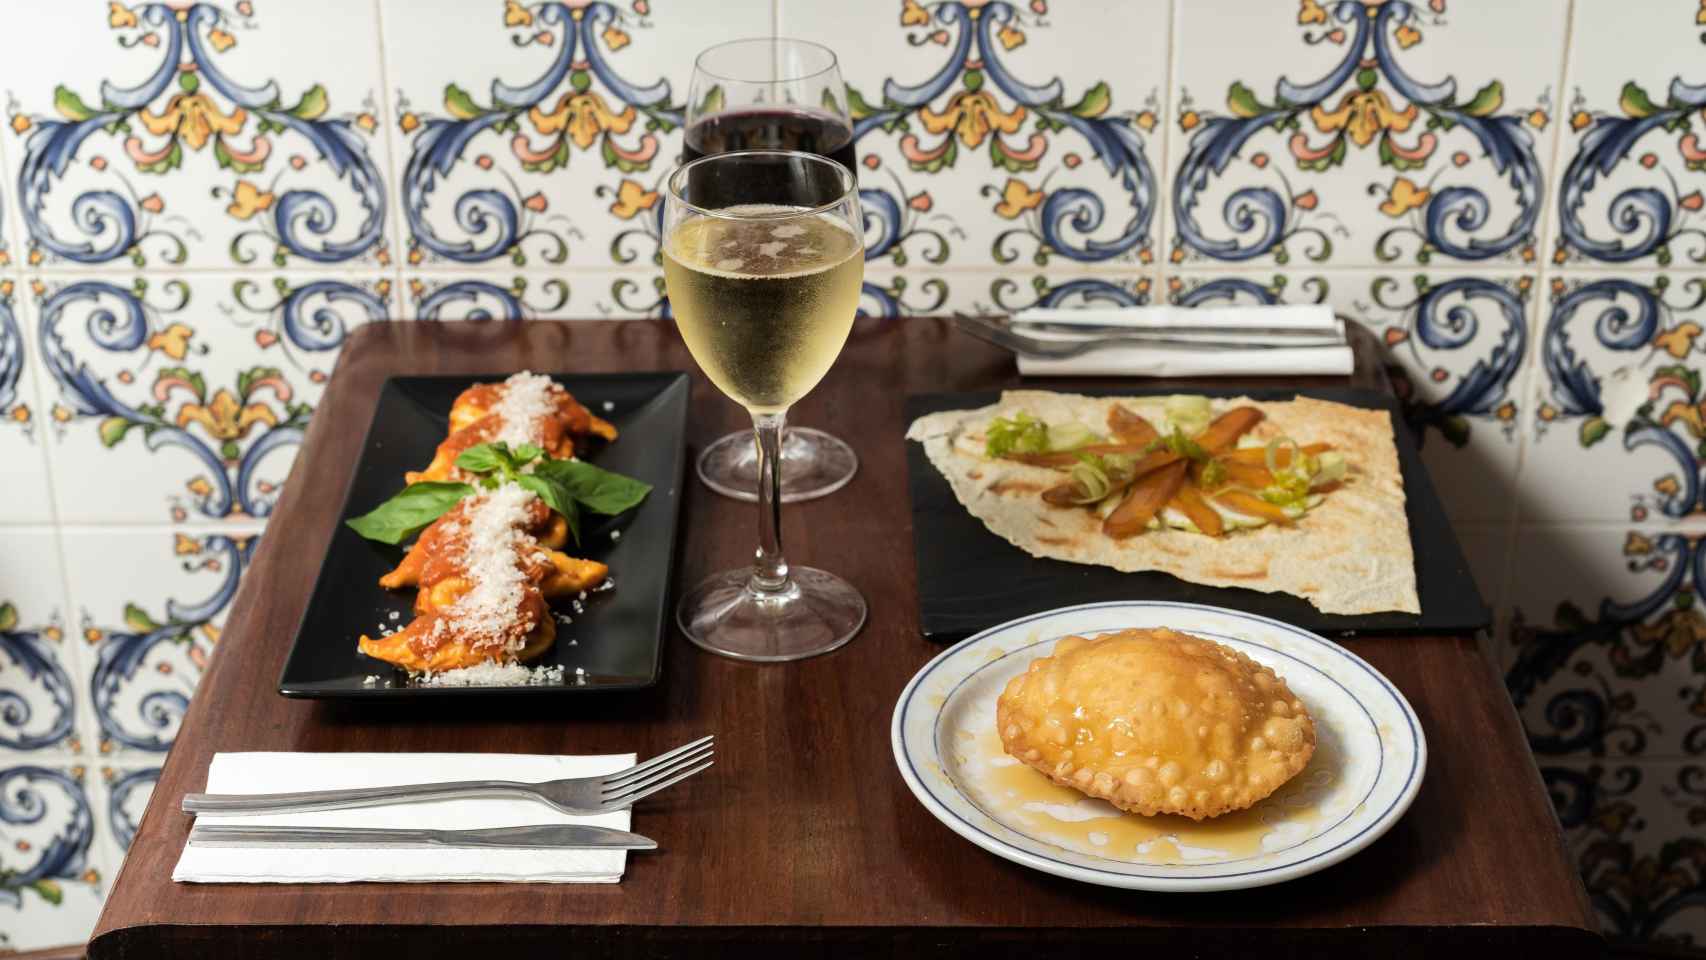 Platos regionales sardos del restaurante Can Sardi de Barcelona, uno de los cuatro establecimientos seleccionados para potenciar la alta cocina regional de Italia / ALEX FROLOFF